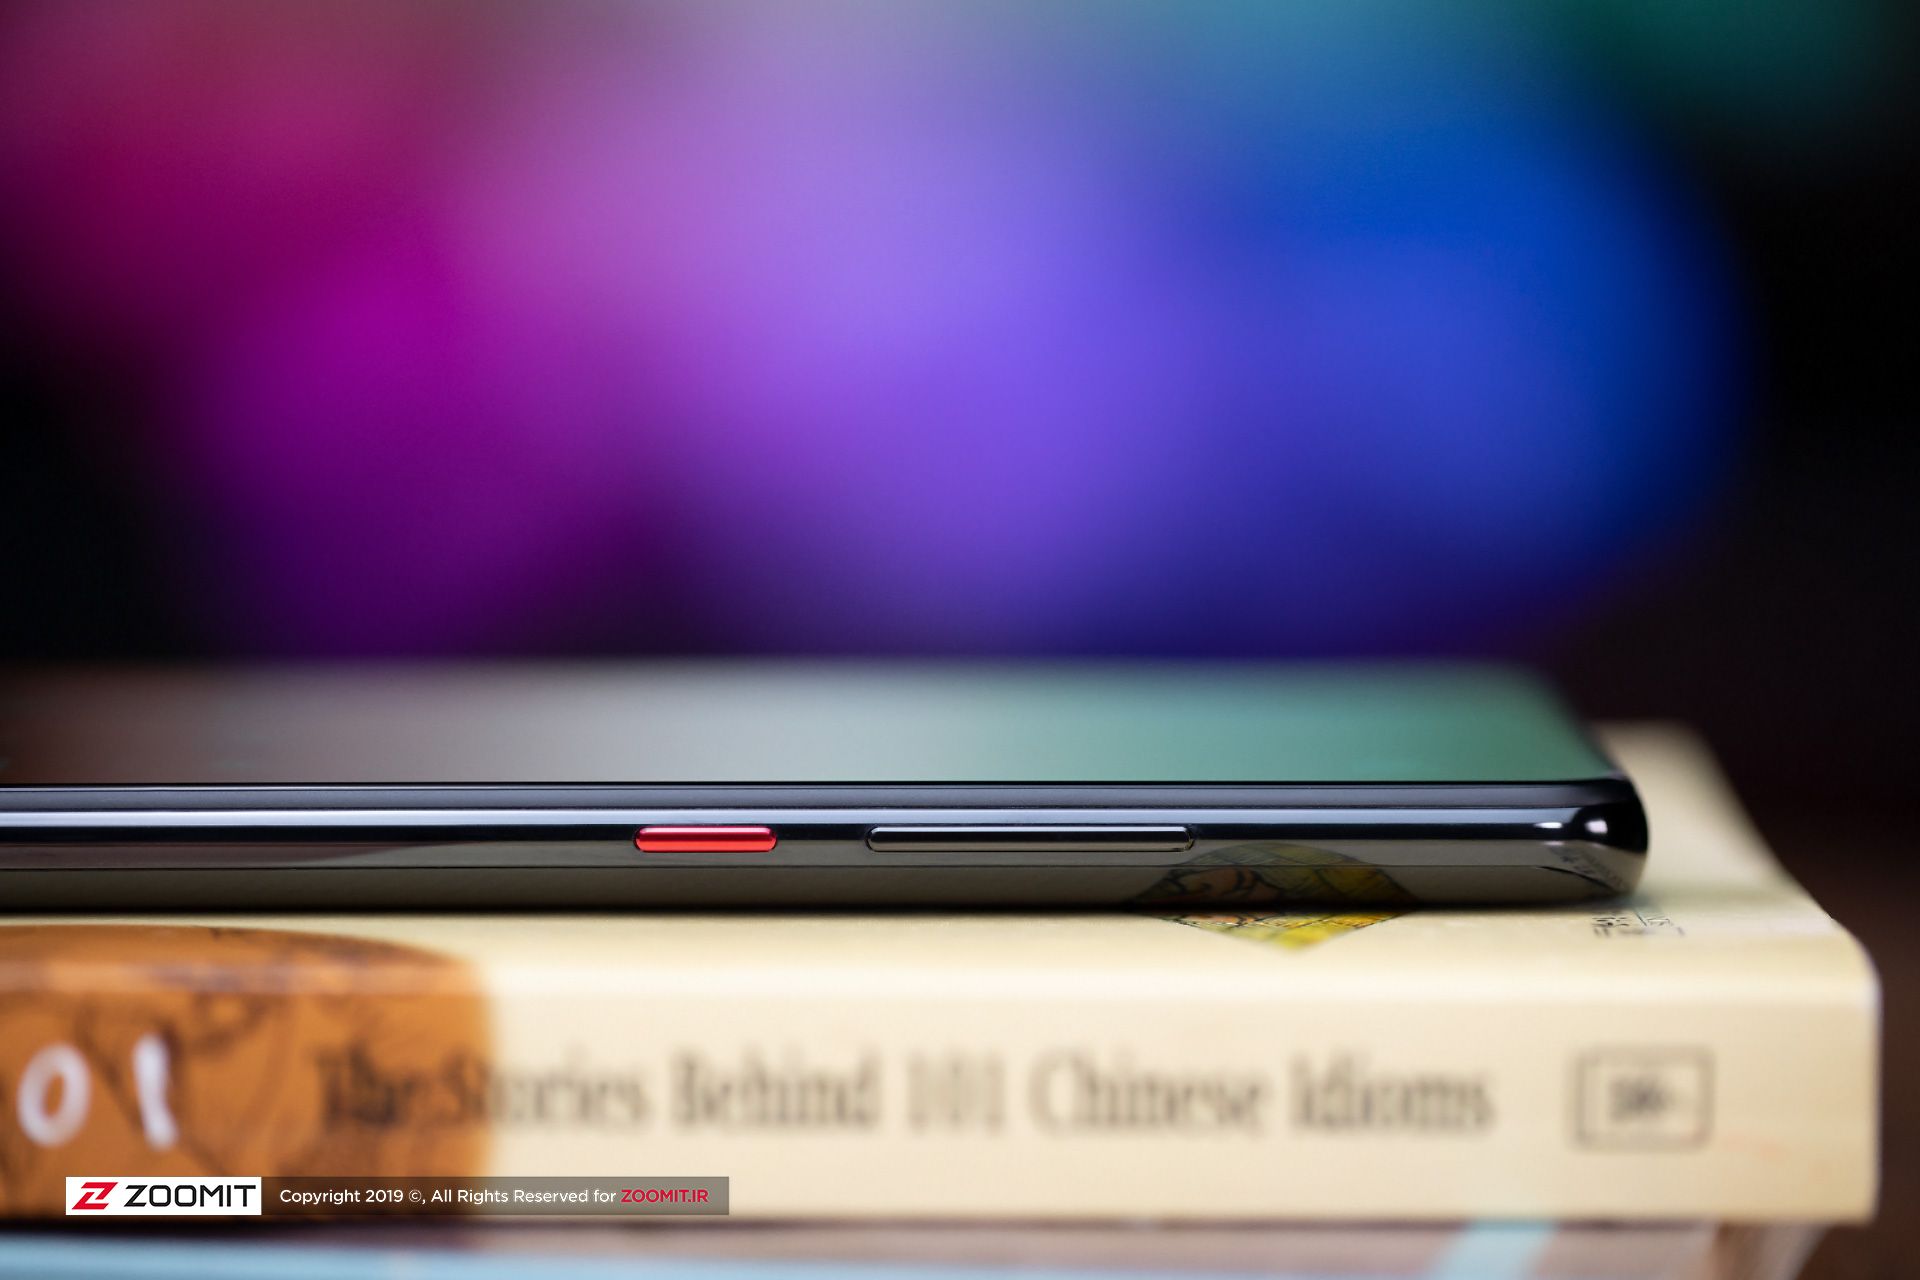 شیائومی می ۹ تی پرو / Xiaomi Mi 9T Pro / ردمی K20 Pro